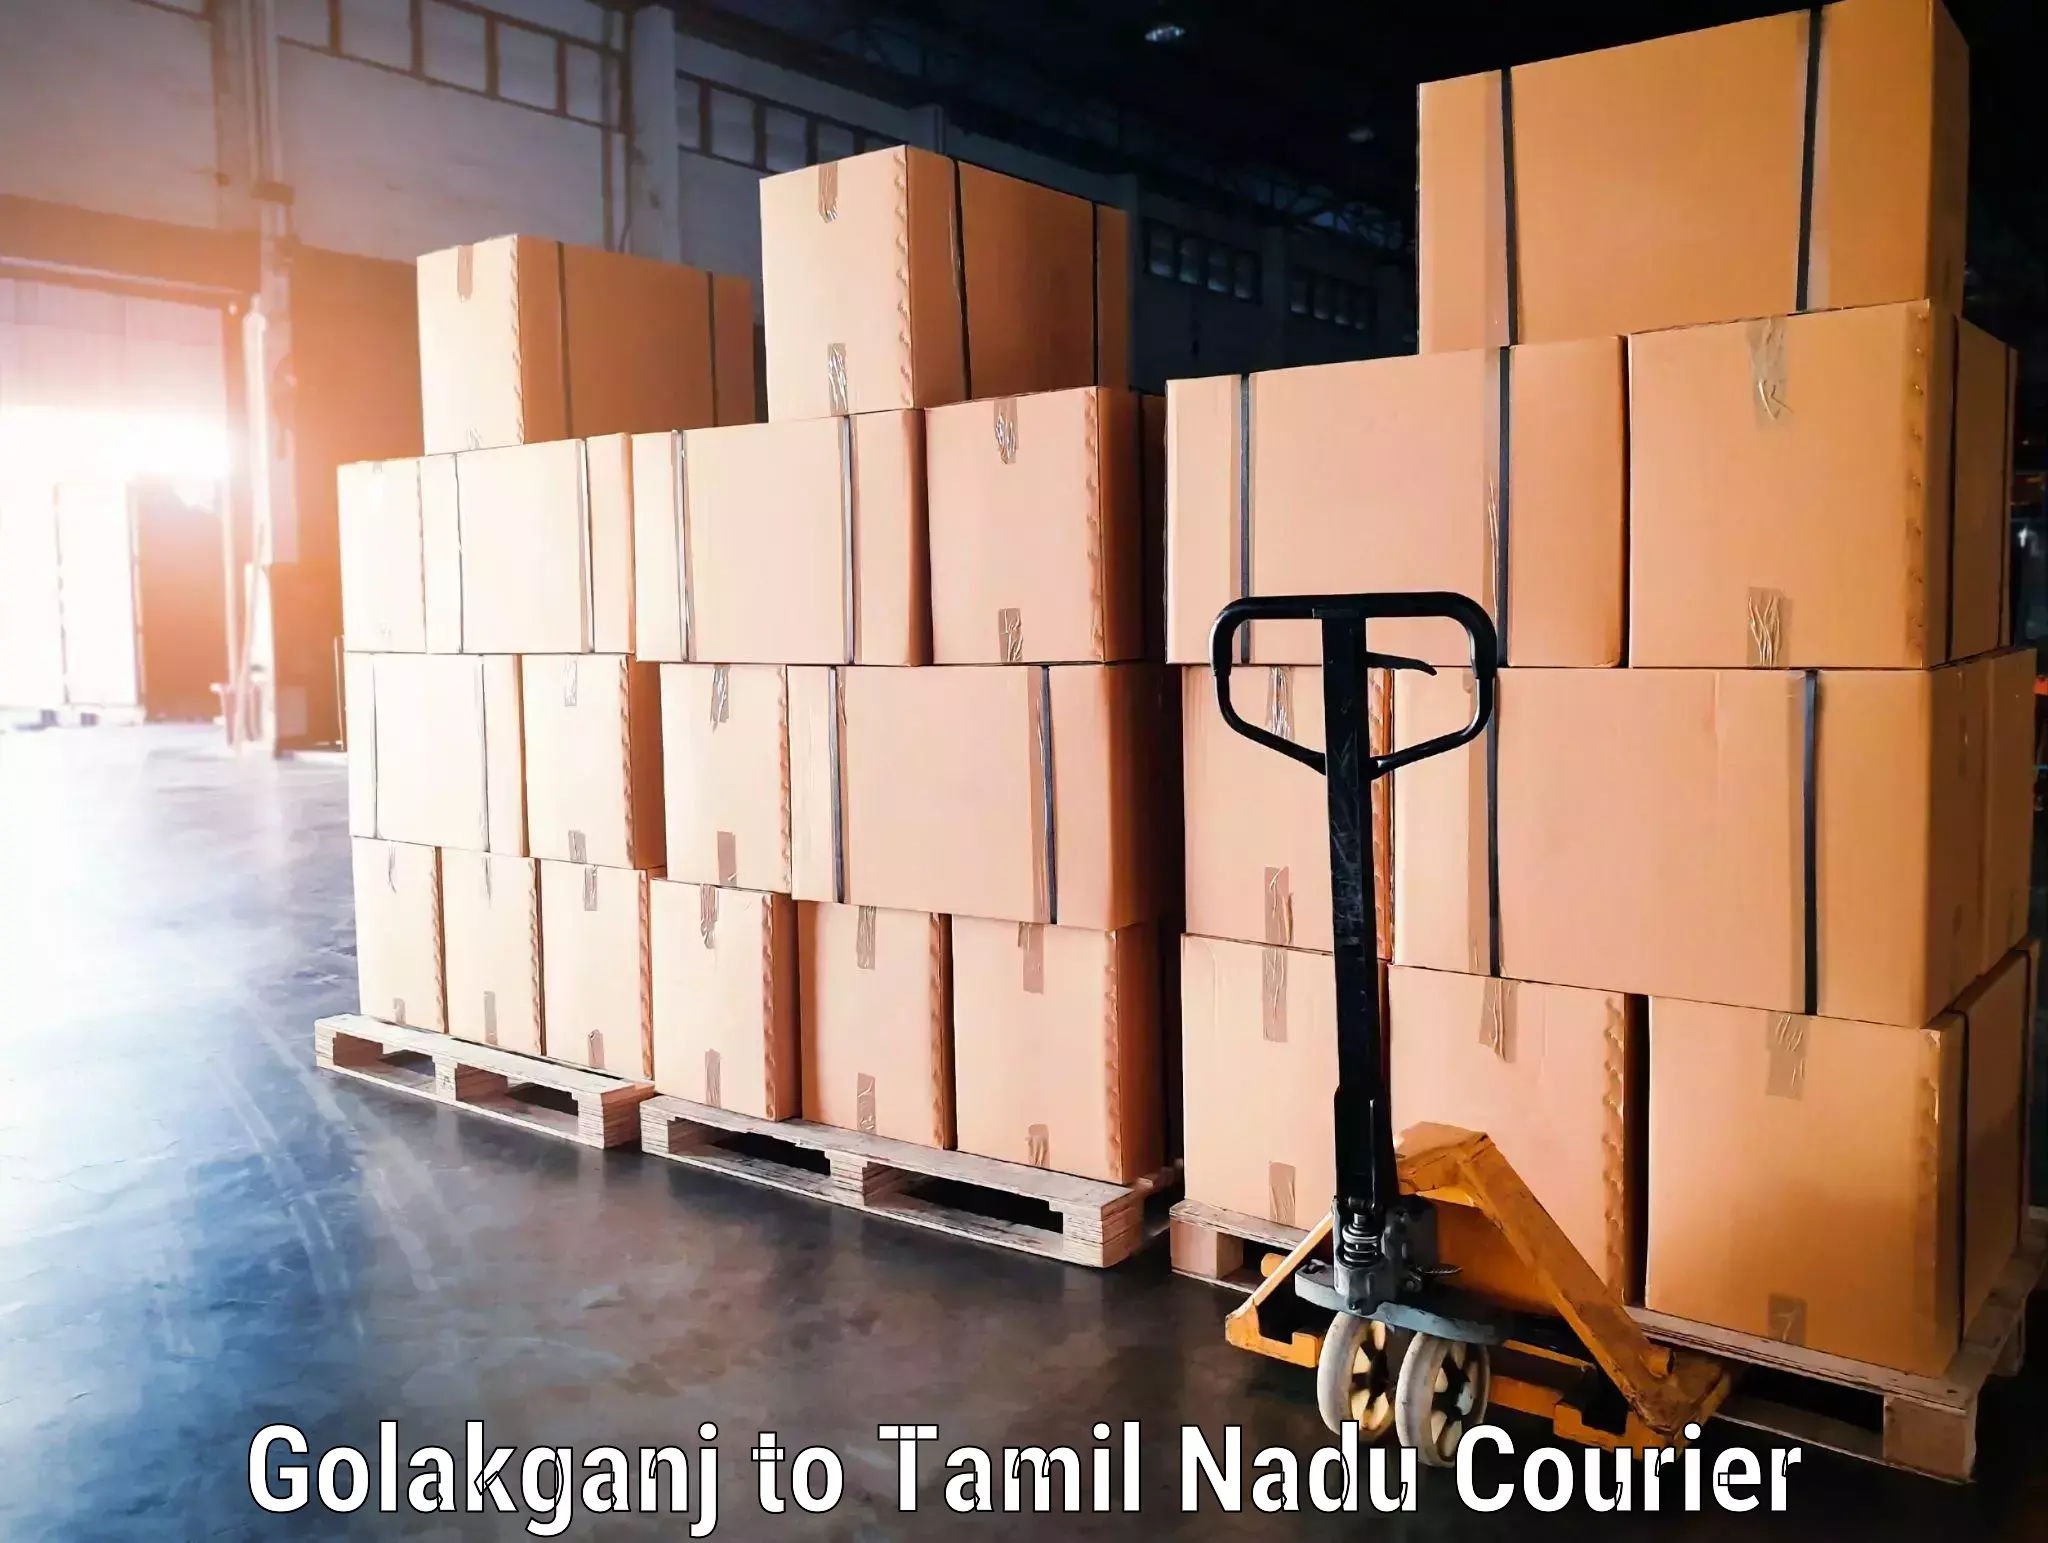 Luggage shipment specialists Golakganj to Tamil Nadu